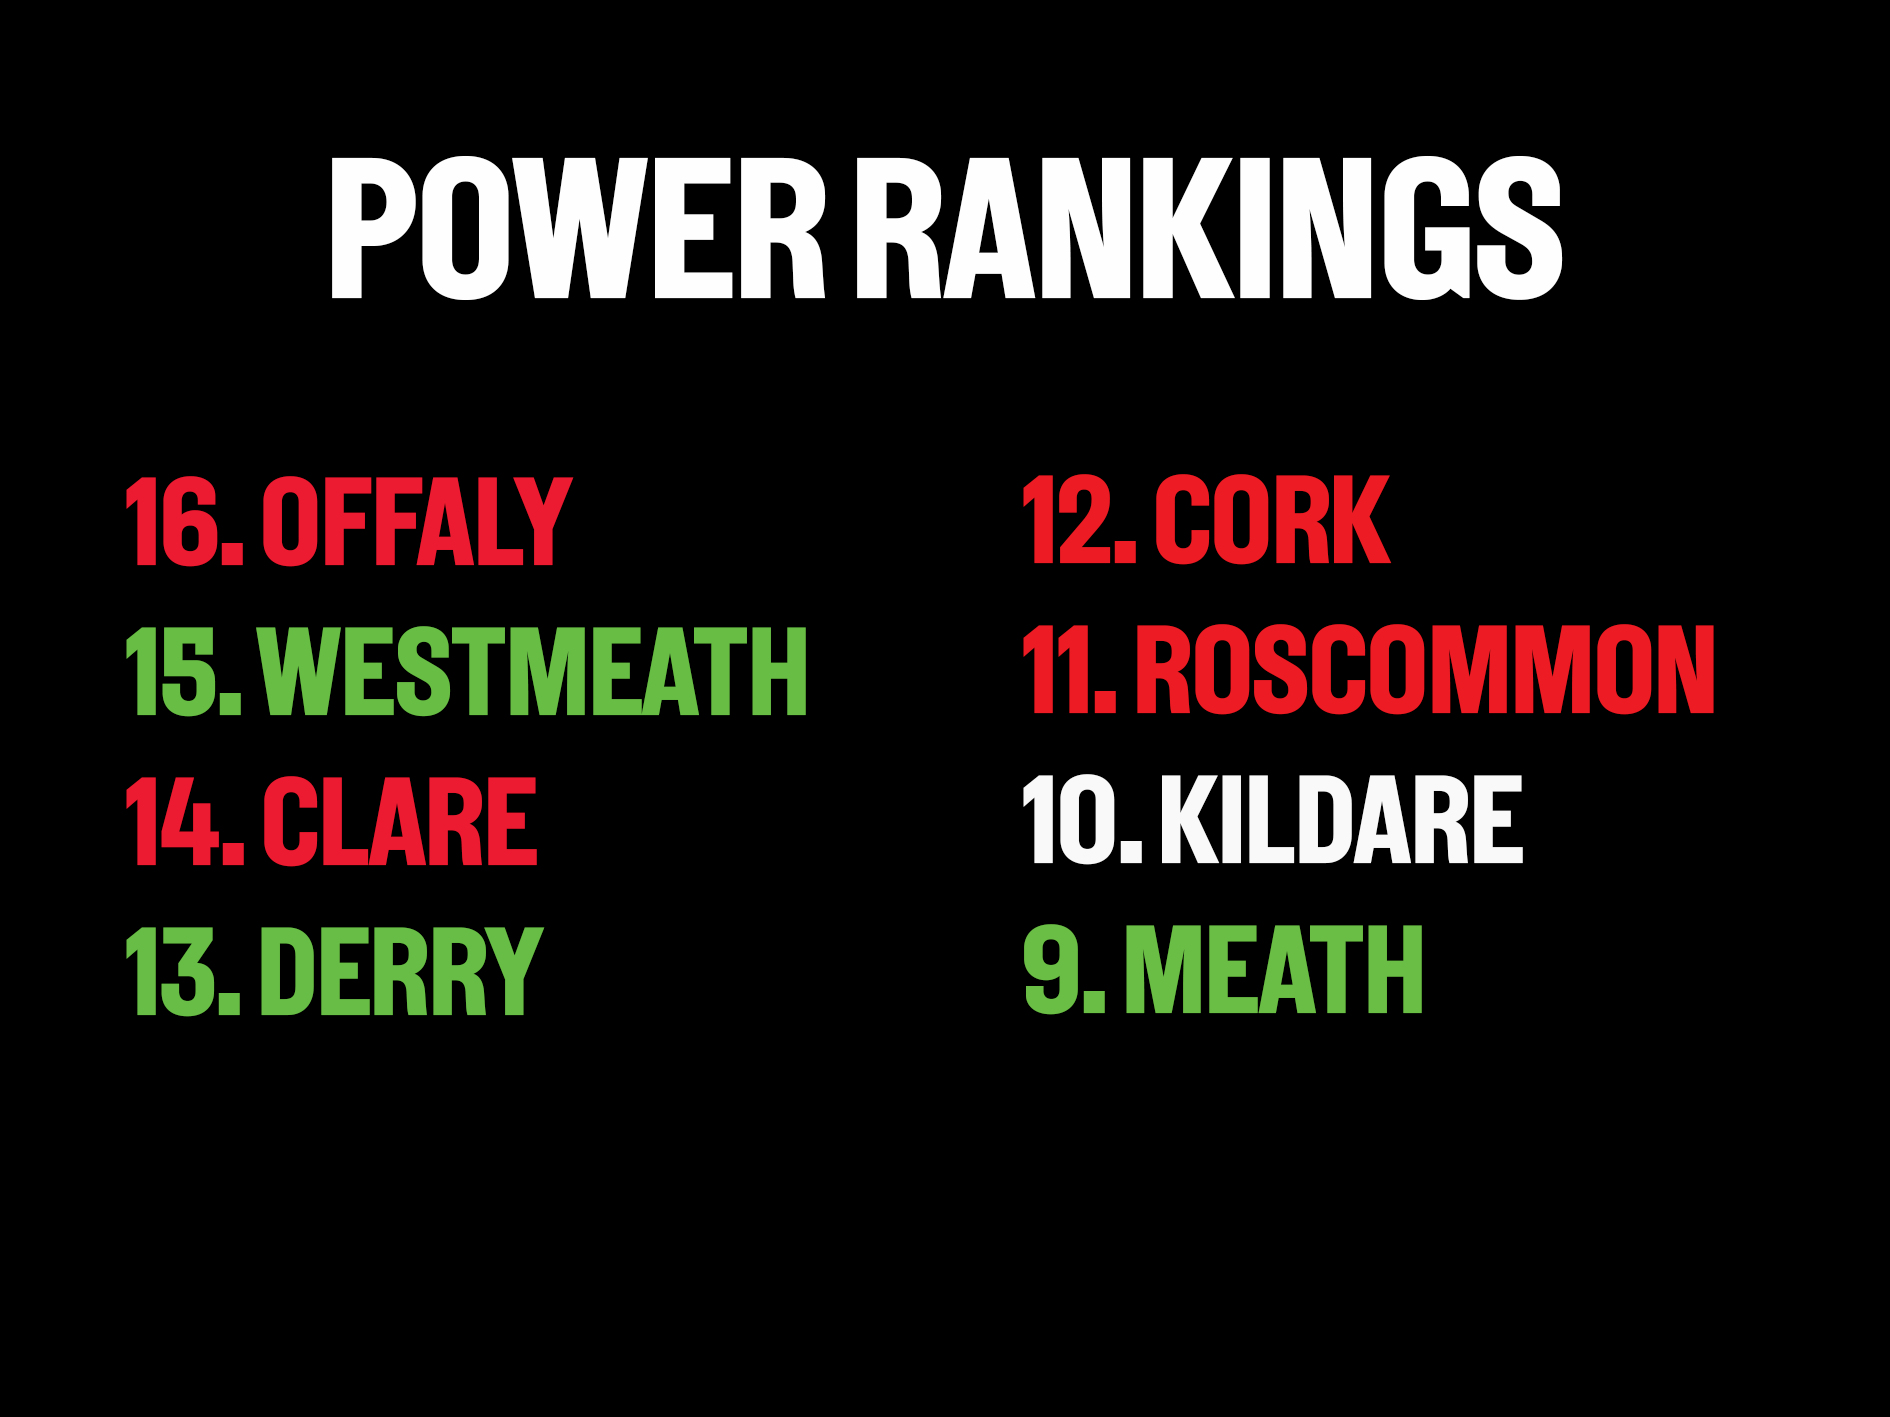 Power rankings